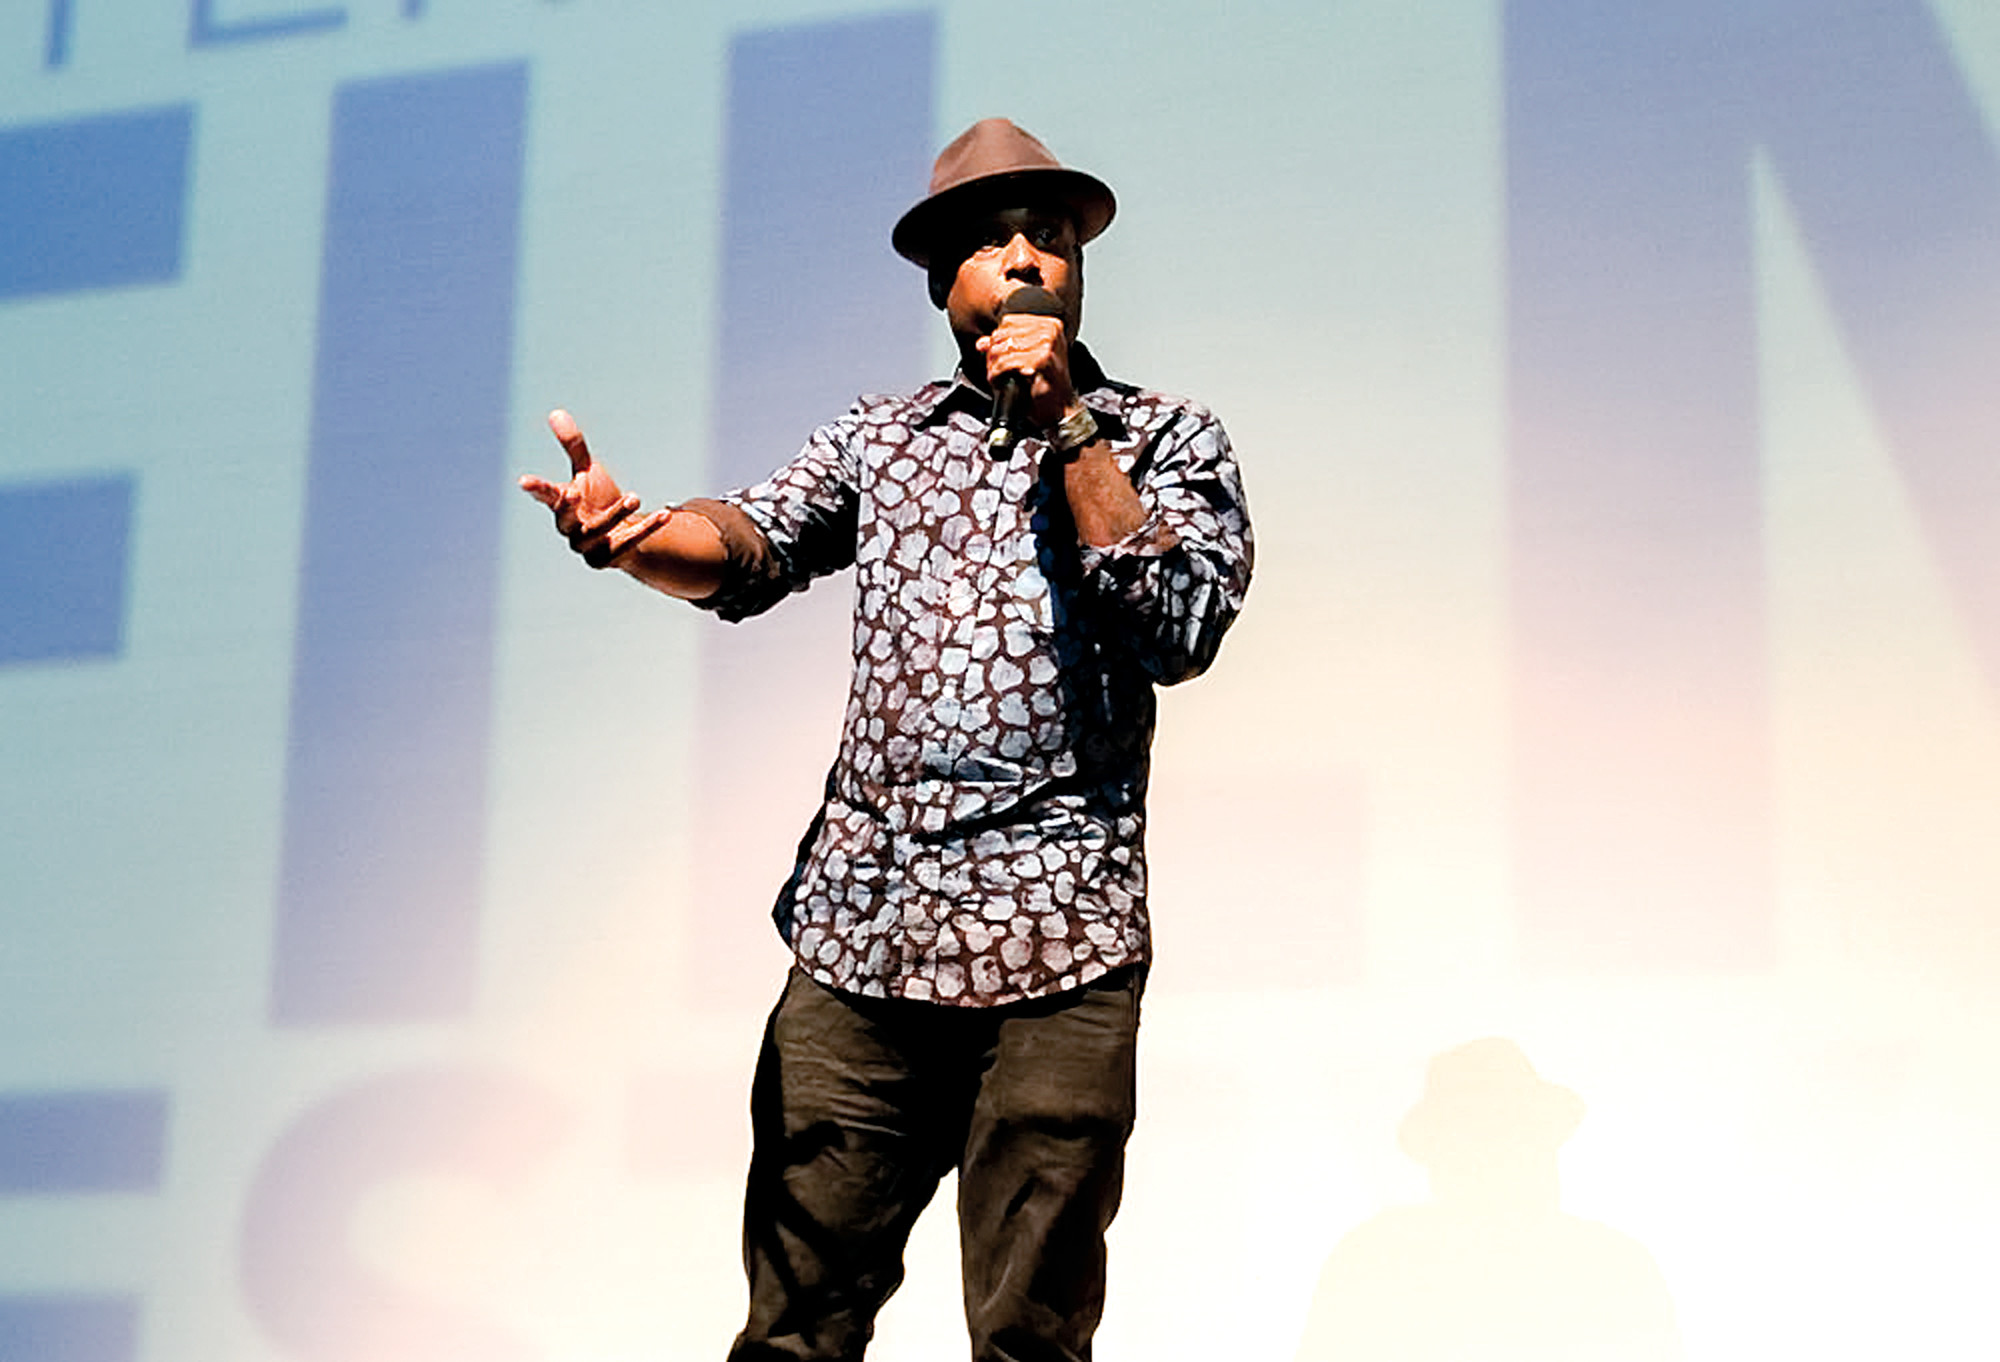 Rapper Talib Kweli was featured in the festival’s Joan Jett Music Film series.